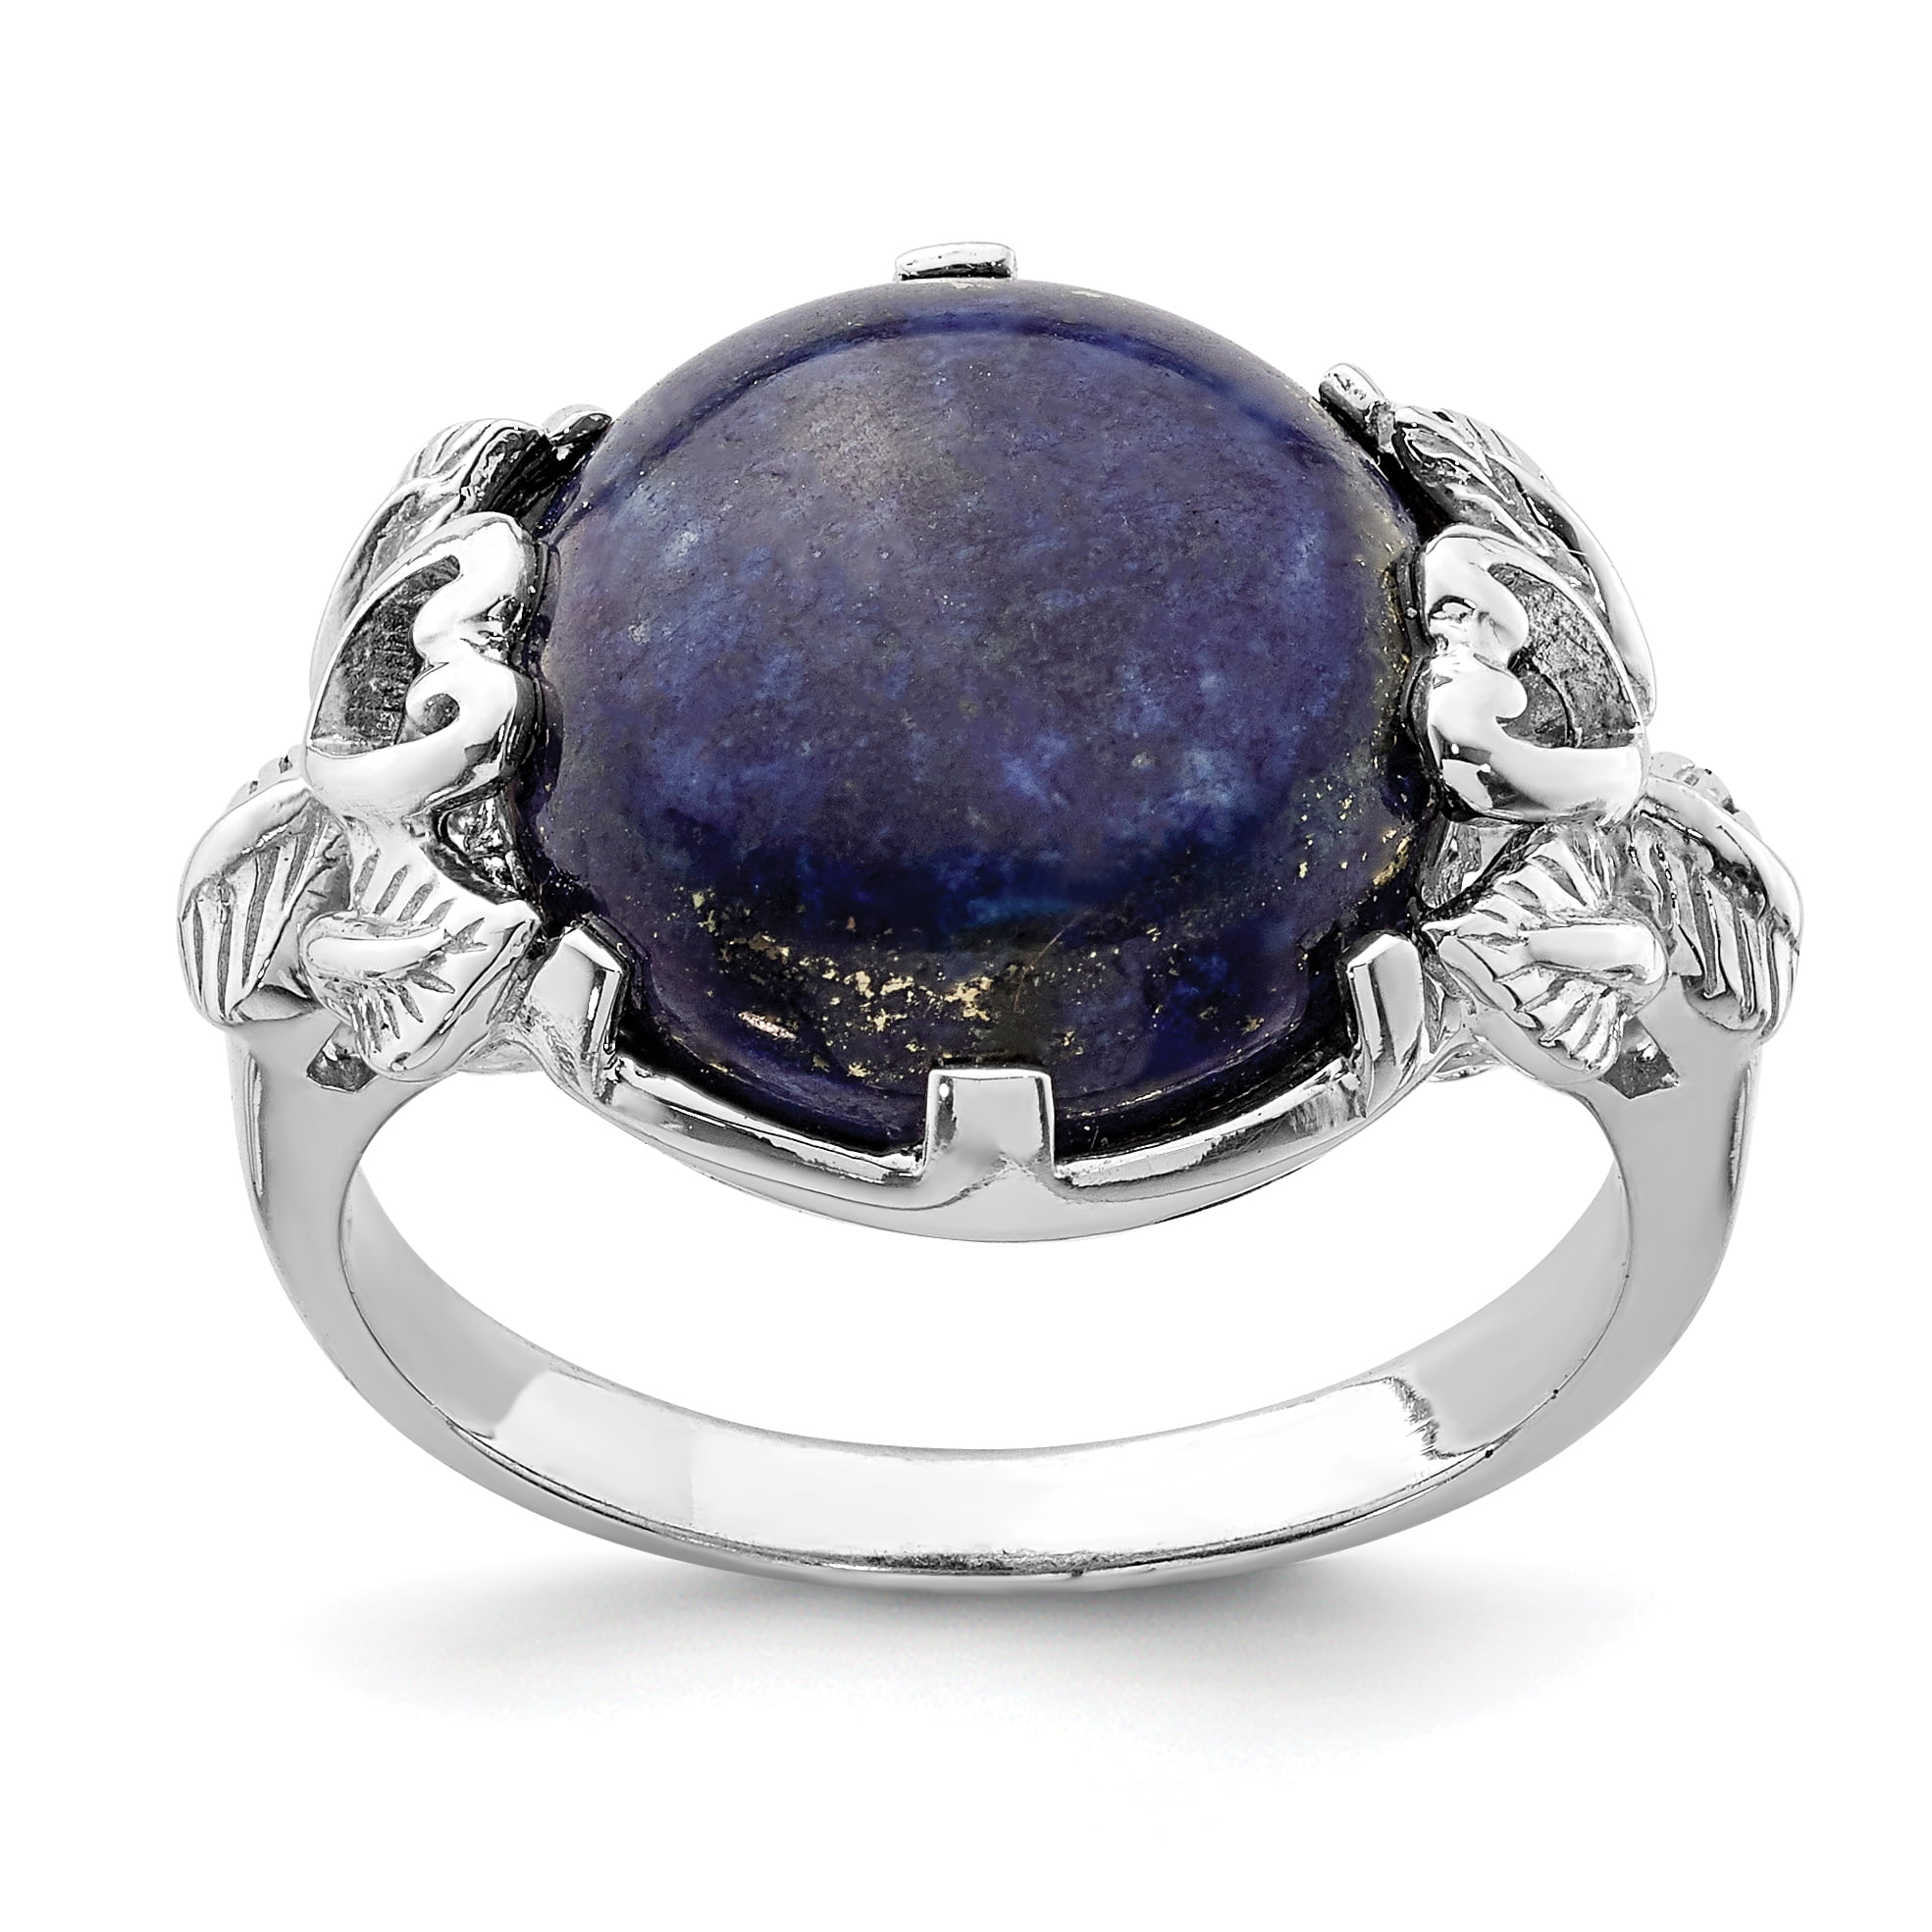 Fabulous Lapis Lazuli 925 Sterling Silver Gemstone Ring Handmade Gift For Love